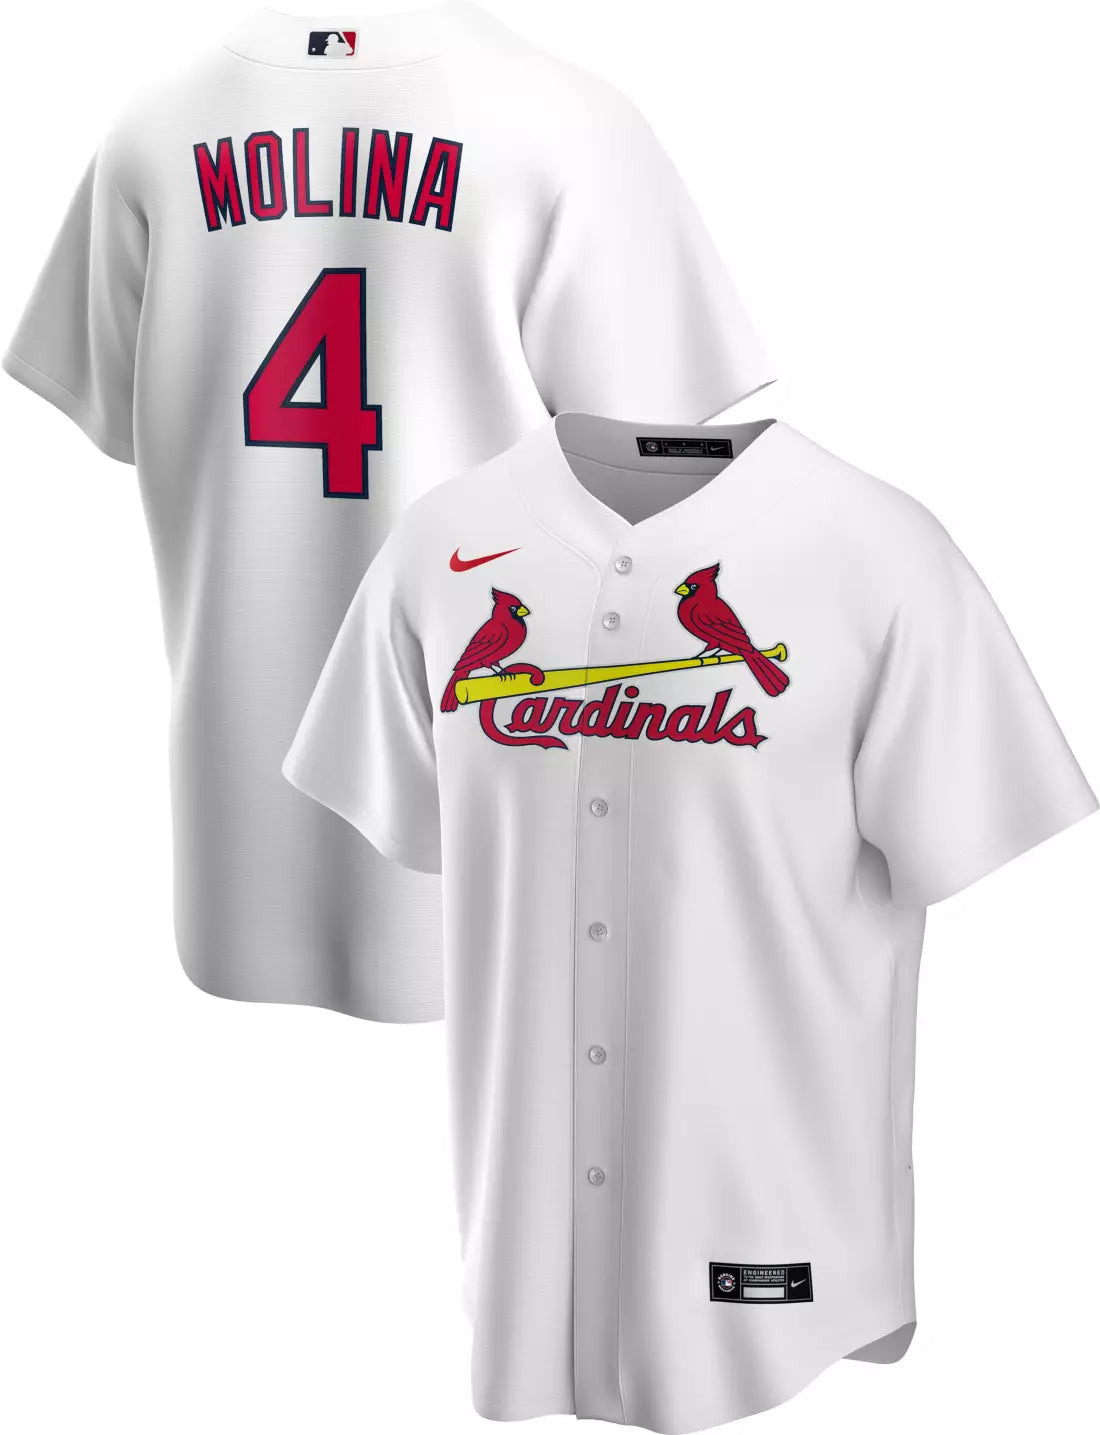 St. Louis Cardinals Player Apprel, Yadier Molina Shirts